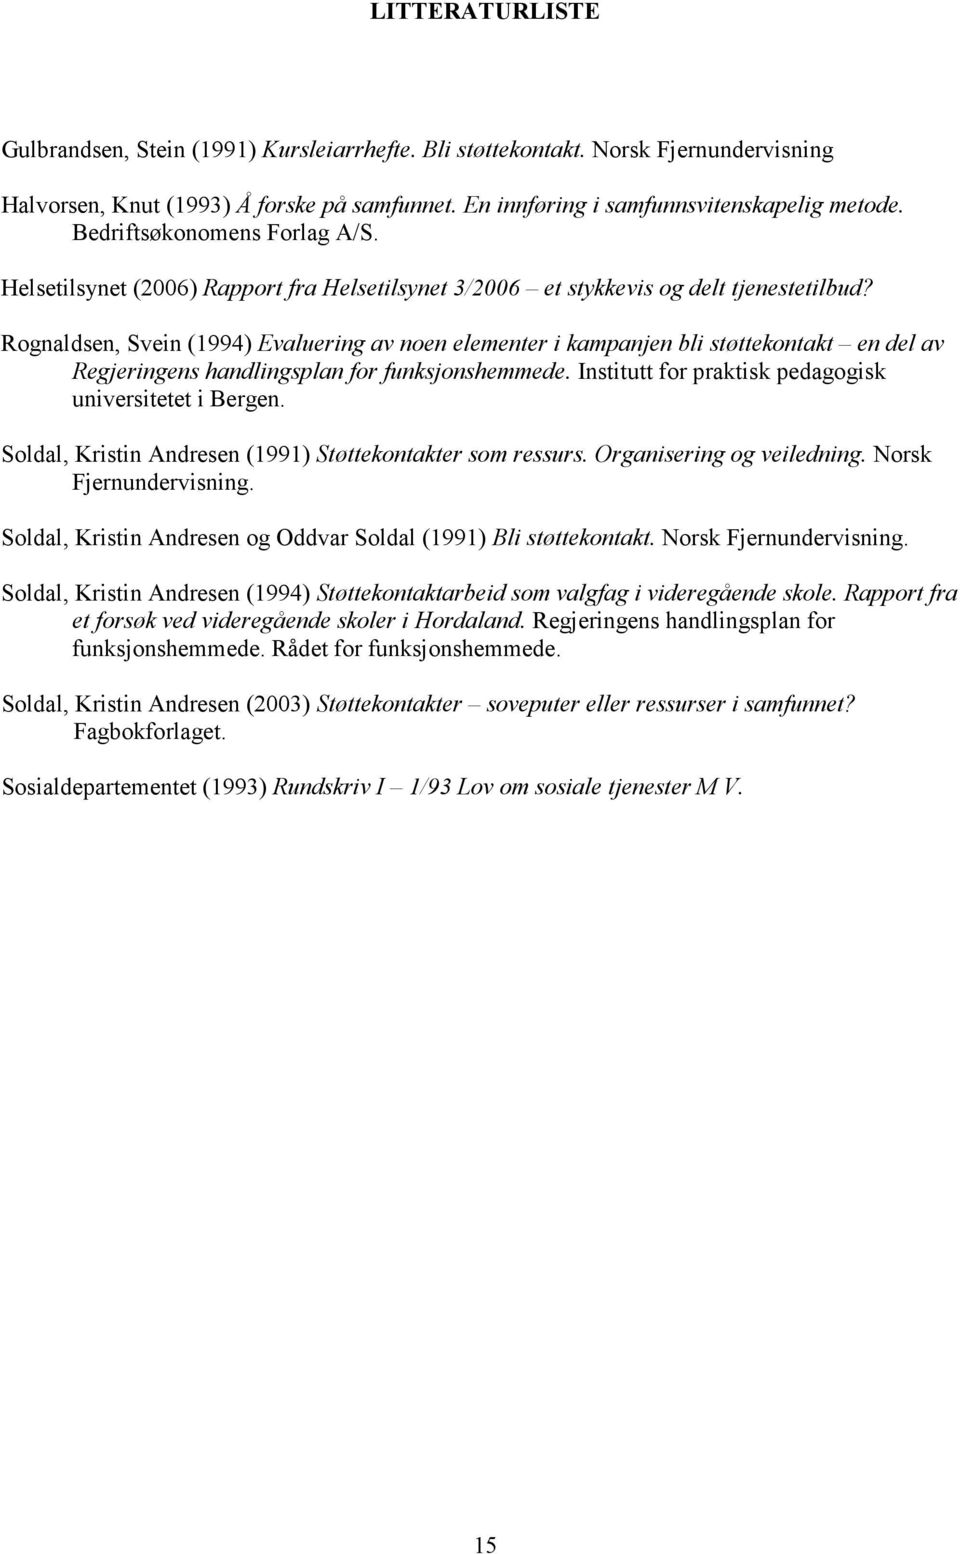 Rognaldsen, Svein (1994) Evaluering av noen elementer i kampanjen bli støttekontakt en del av Regjeringens handlingsplan for funksjonshemmede. Institutt for praktisk pedagogisk universitetet i Bergen.